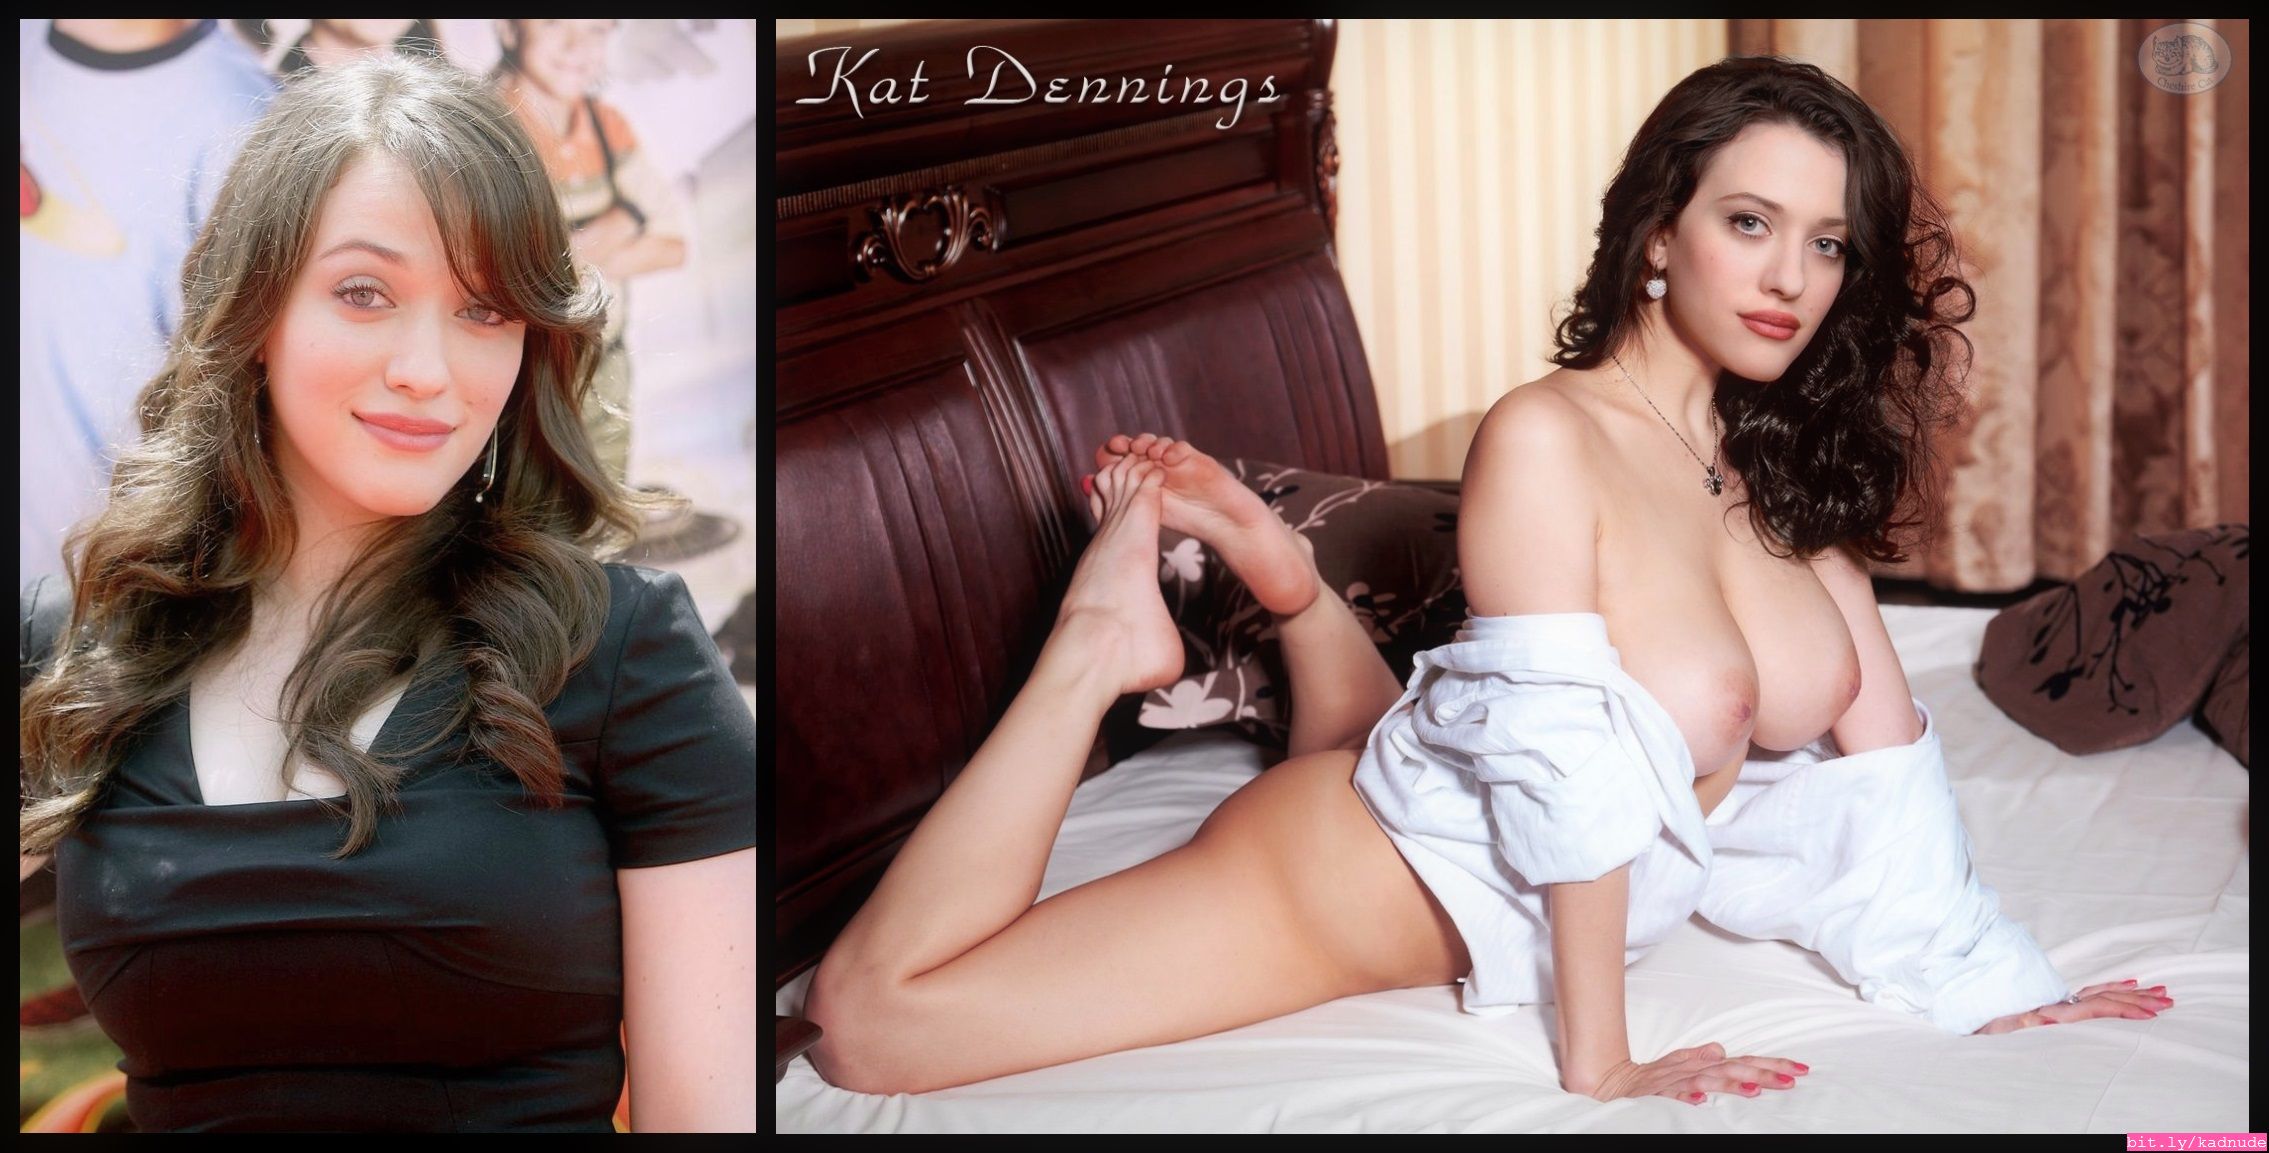 Everyone wants to see Kat Dennings naked. 